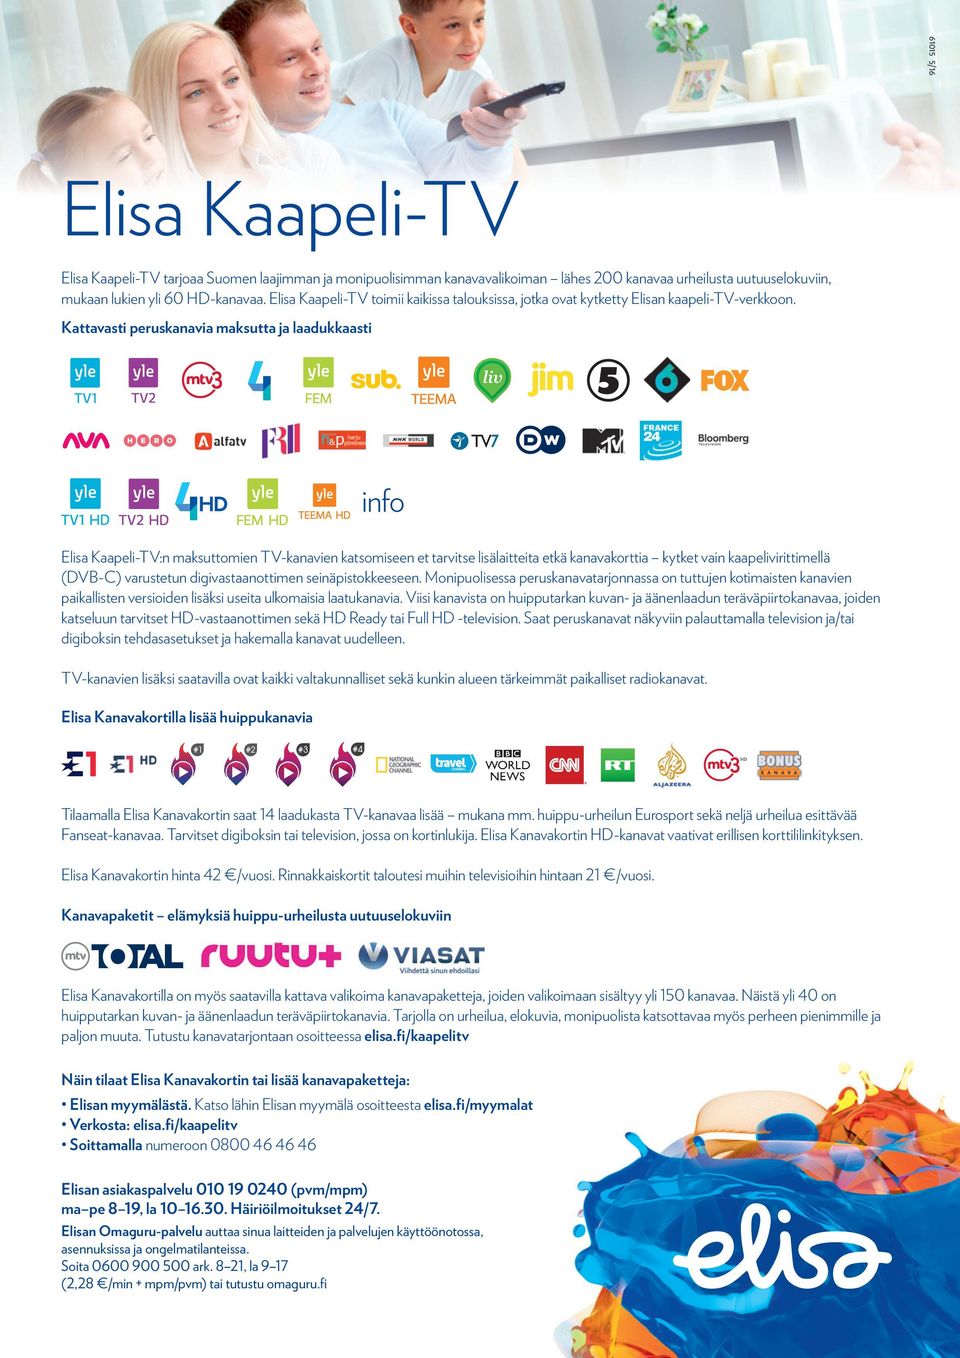 Kattavasti peruskanavia maksutta ja laadukkaasti info Elisa Kaapeli-TV:n maksuttomien TV-kanavien katsomiseen et tarvitse lisälaitteita etkä kanavakorttia kytket vain kaapelivirittimellä (DV-C)